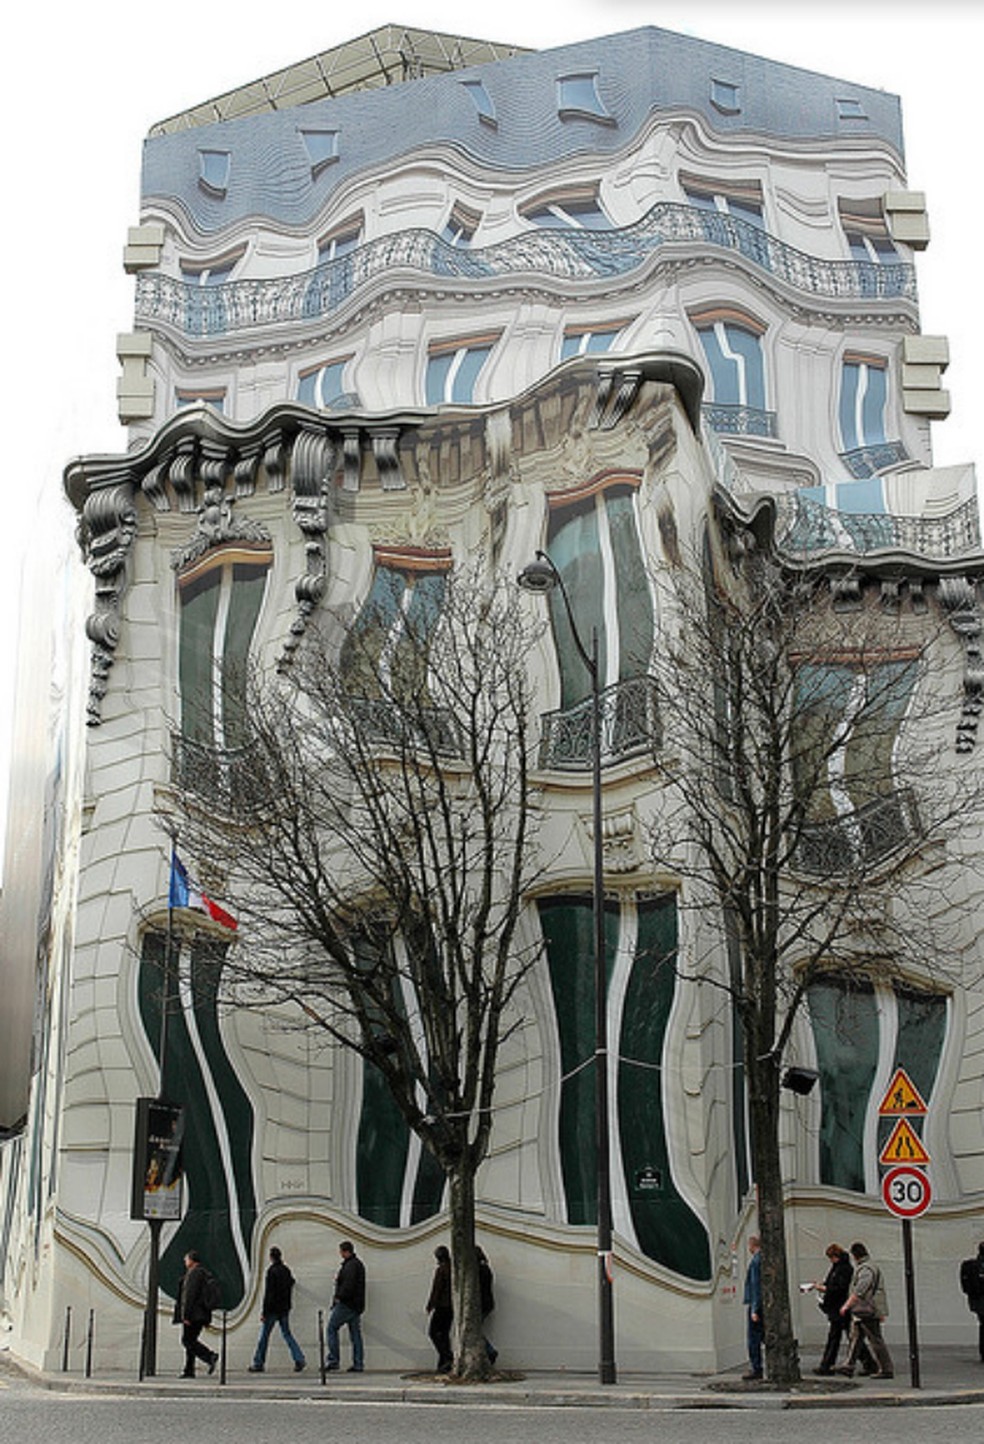 Palácio francês parece distorcido mas na verdade é o tapume colado a frente da obra (Foto Poussnik) — Foto: TechTudo